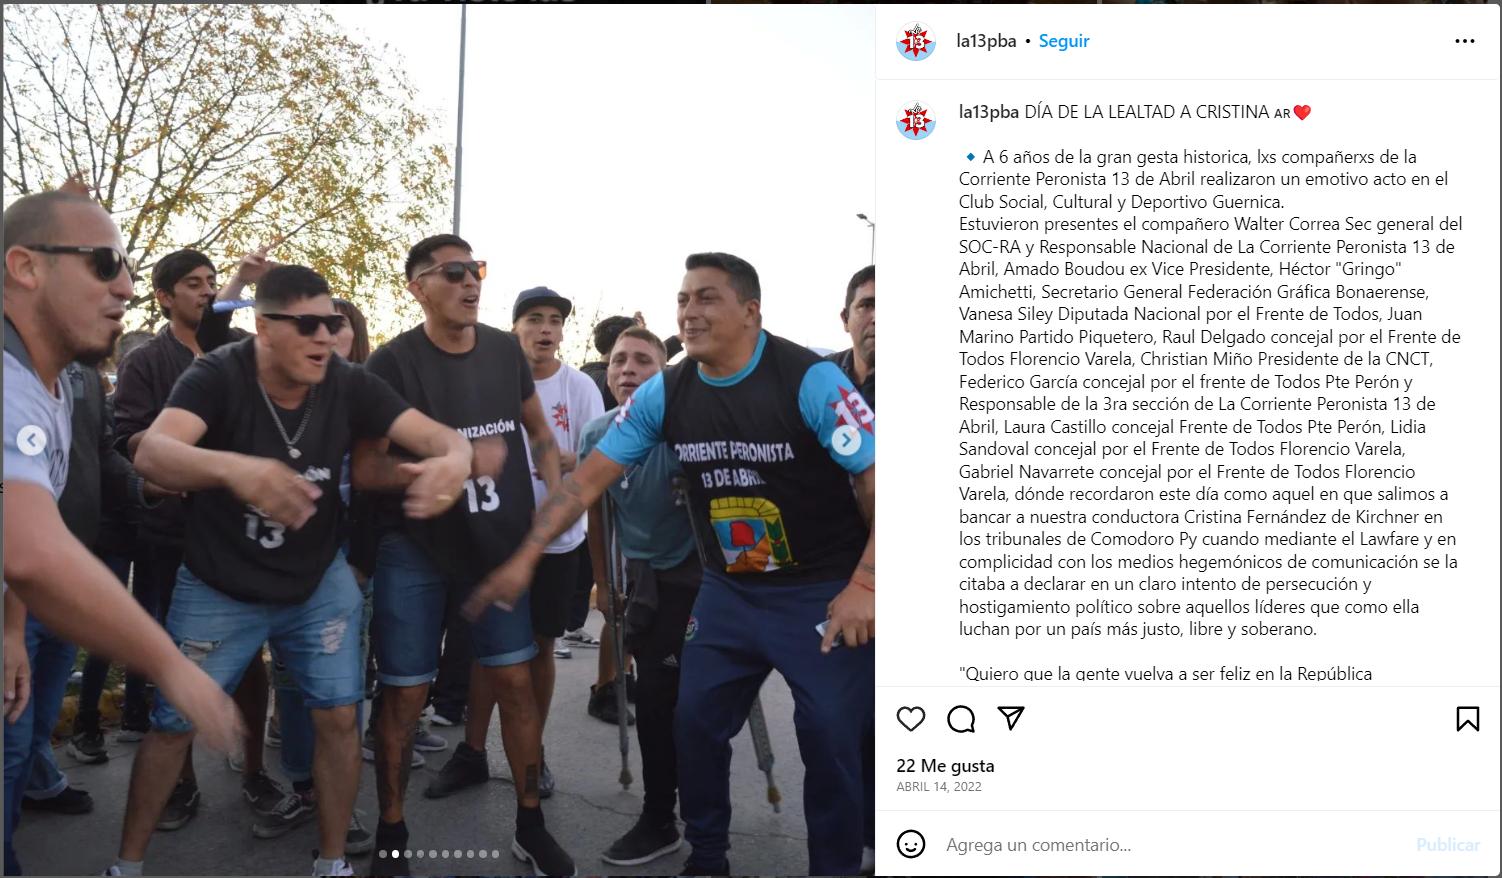 La foto de militantes que tuiteó y luego borró el gobernador Gerardo Morales no es en Jujuy ni es actual